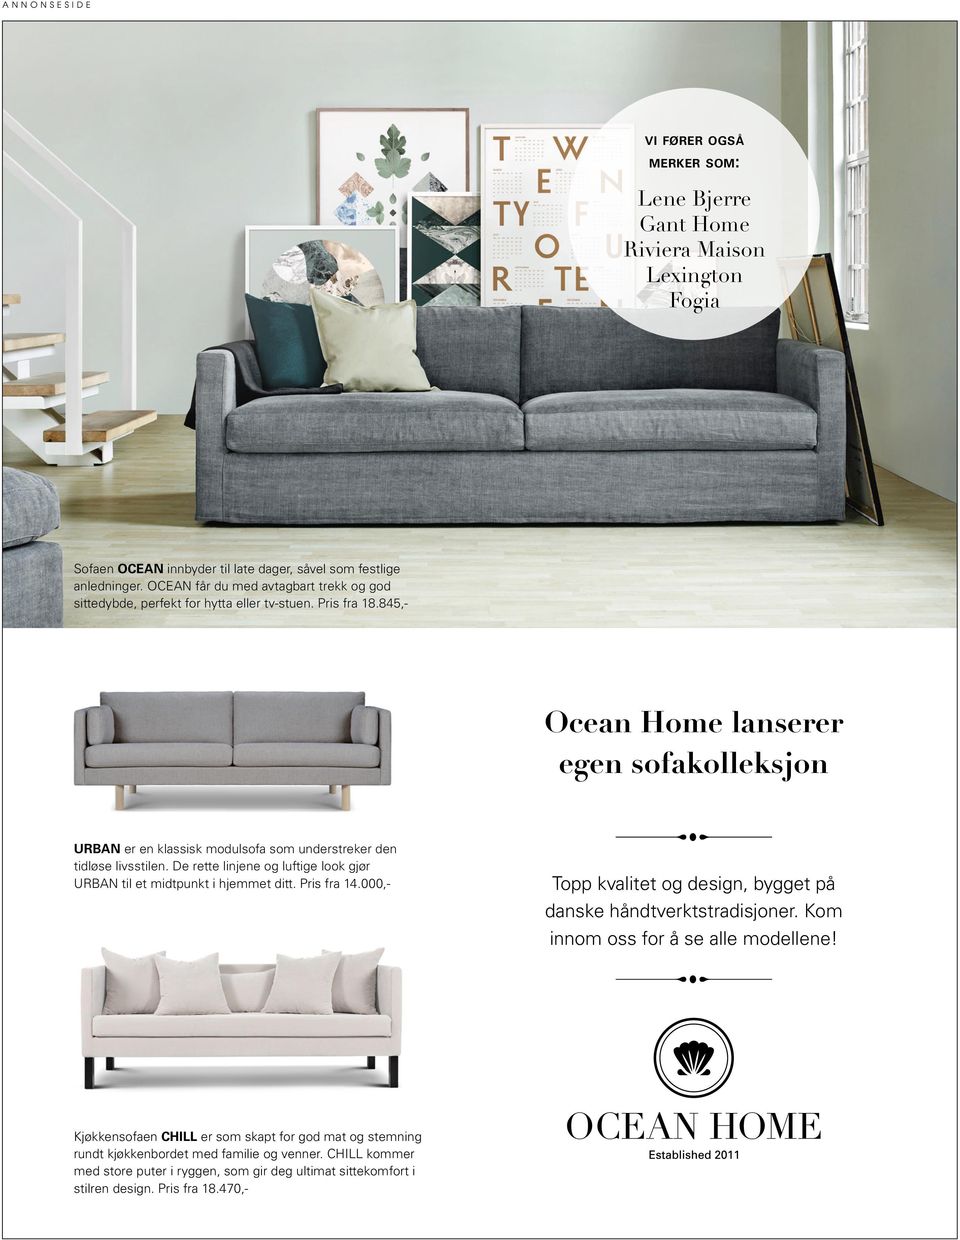 845,- Ocean Home lanserer egen sofakolleksjon URBAN er en klassisk modulsofa som understreker den tidløse livsstilen. De rette linjene og luftige look gjør URBAN til et midtpunkt i hjemmet ditt.